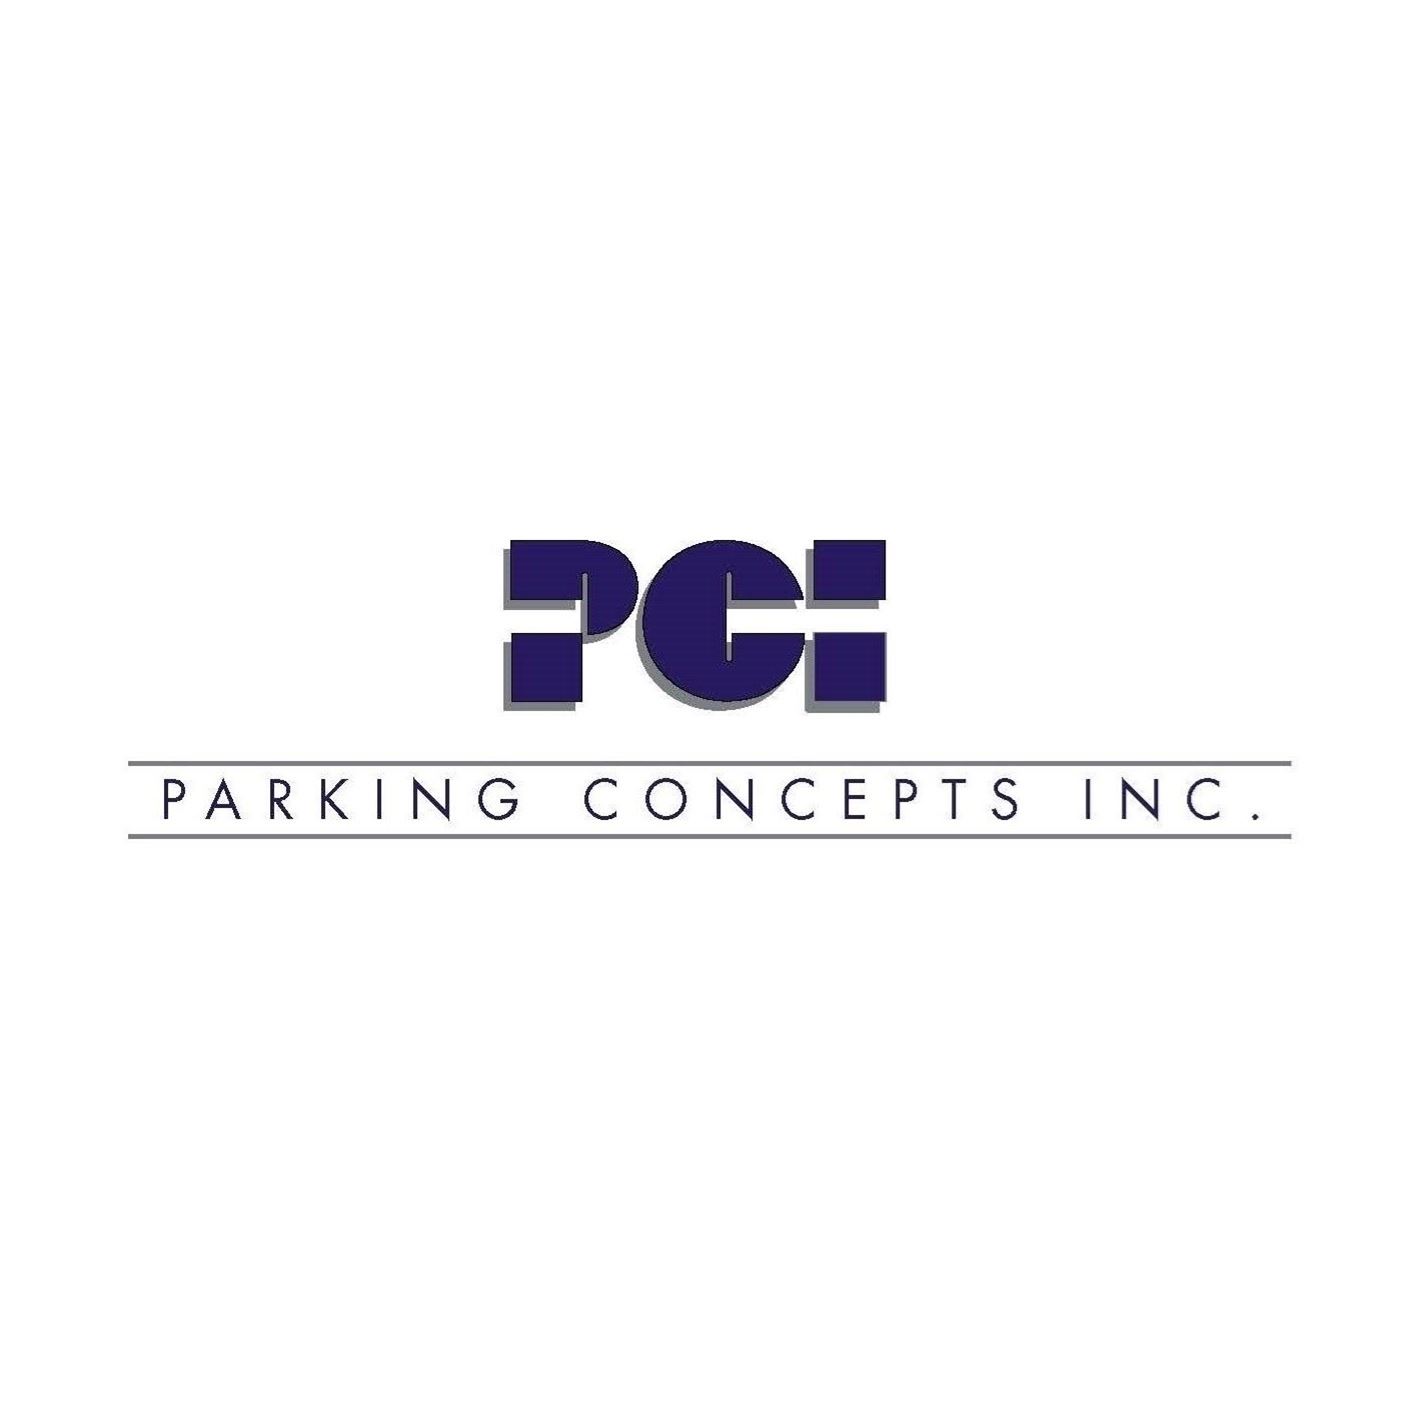 Parking Concepts, Inc.